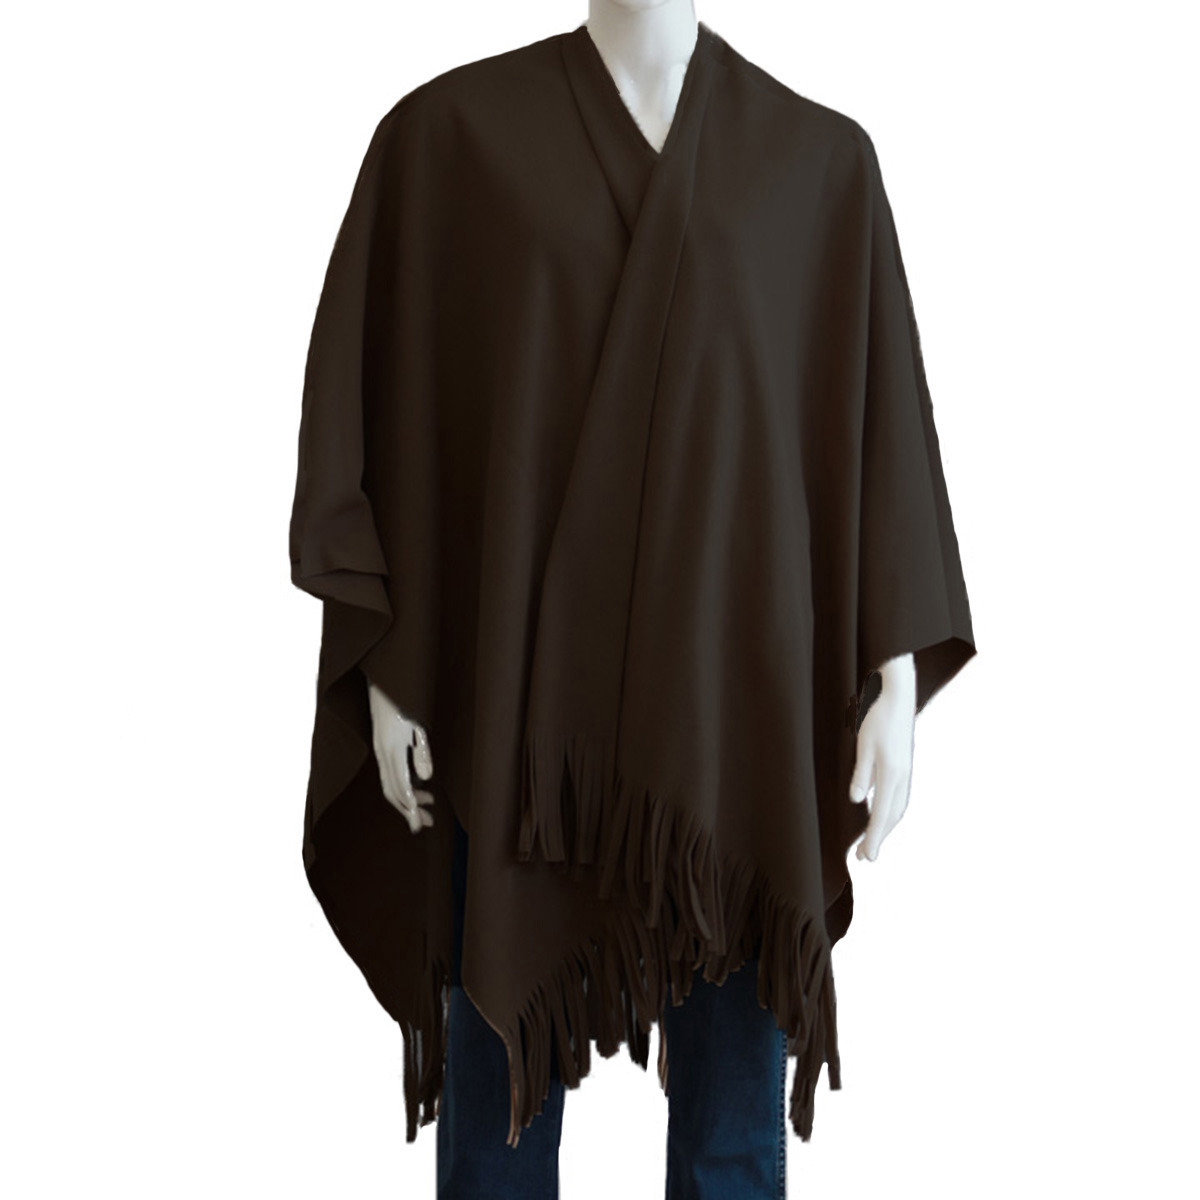 Luxe omslagdoek/poncho - donker bruin - 180 x 140 cm - fleece - Dameskleding accessoires One size -